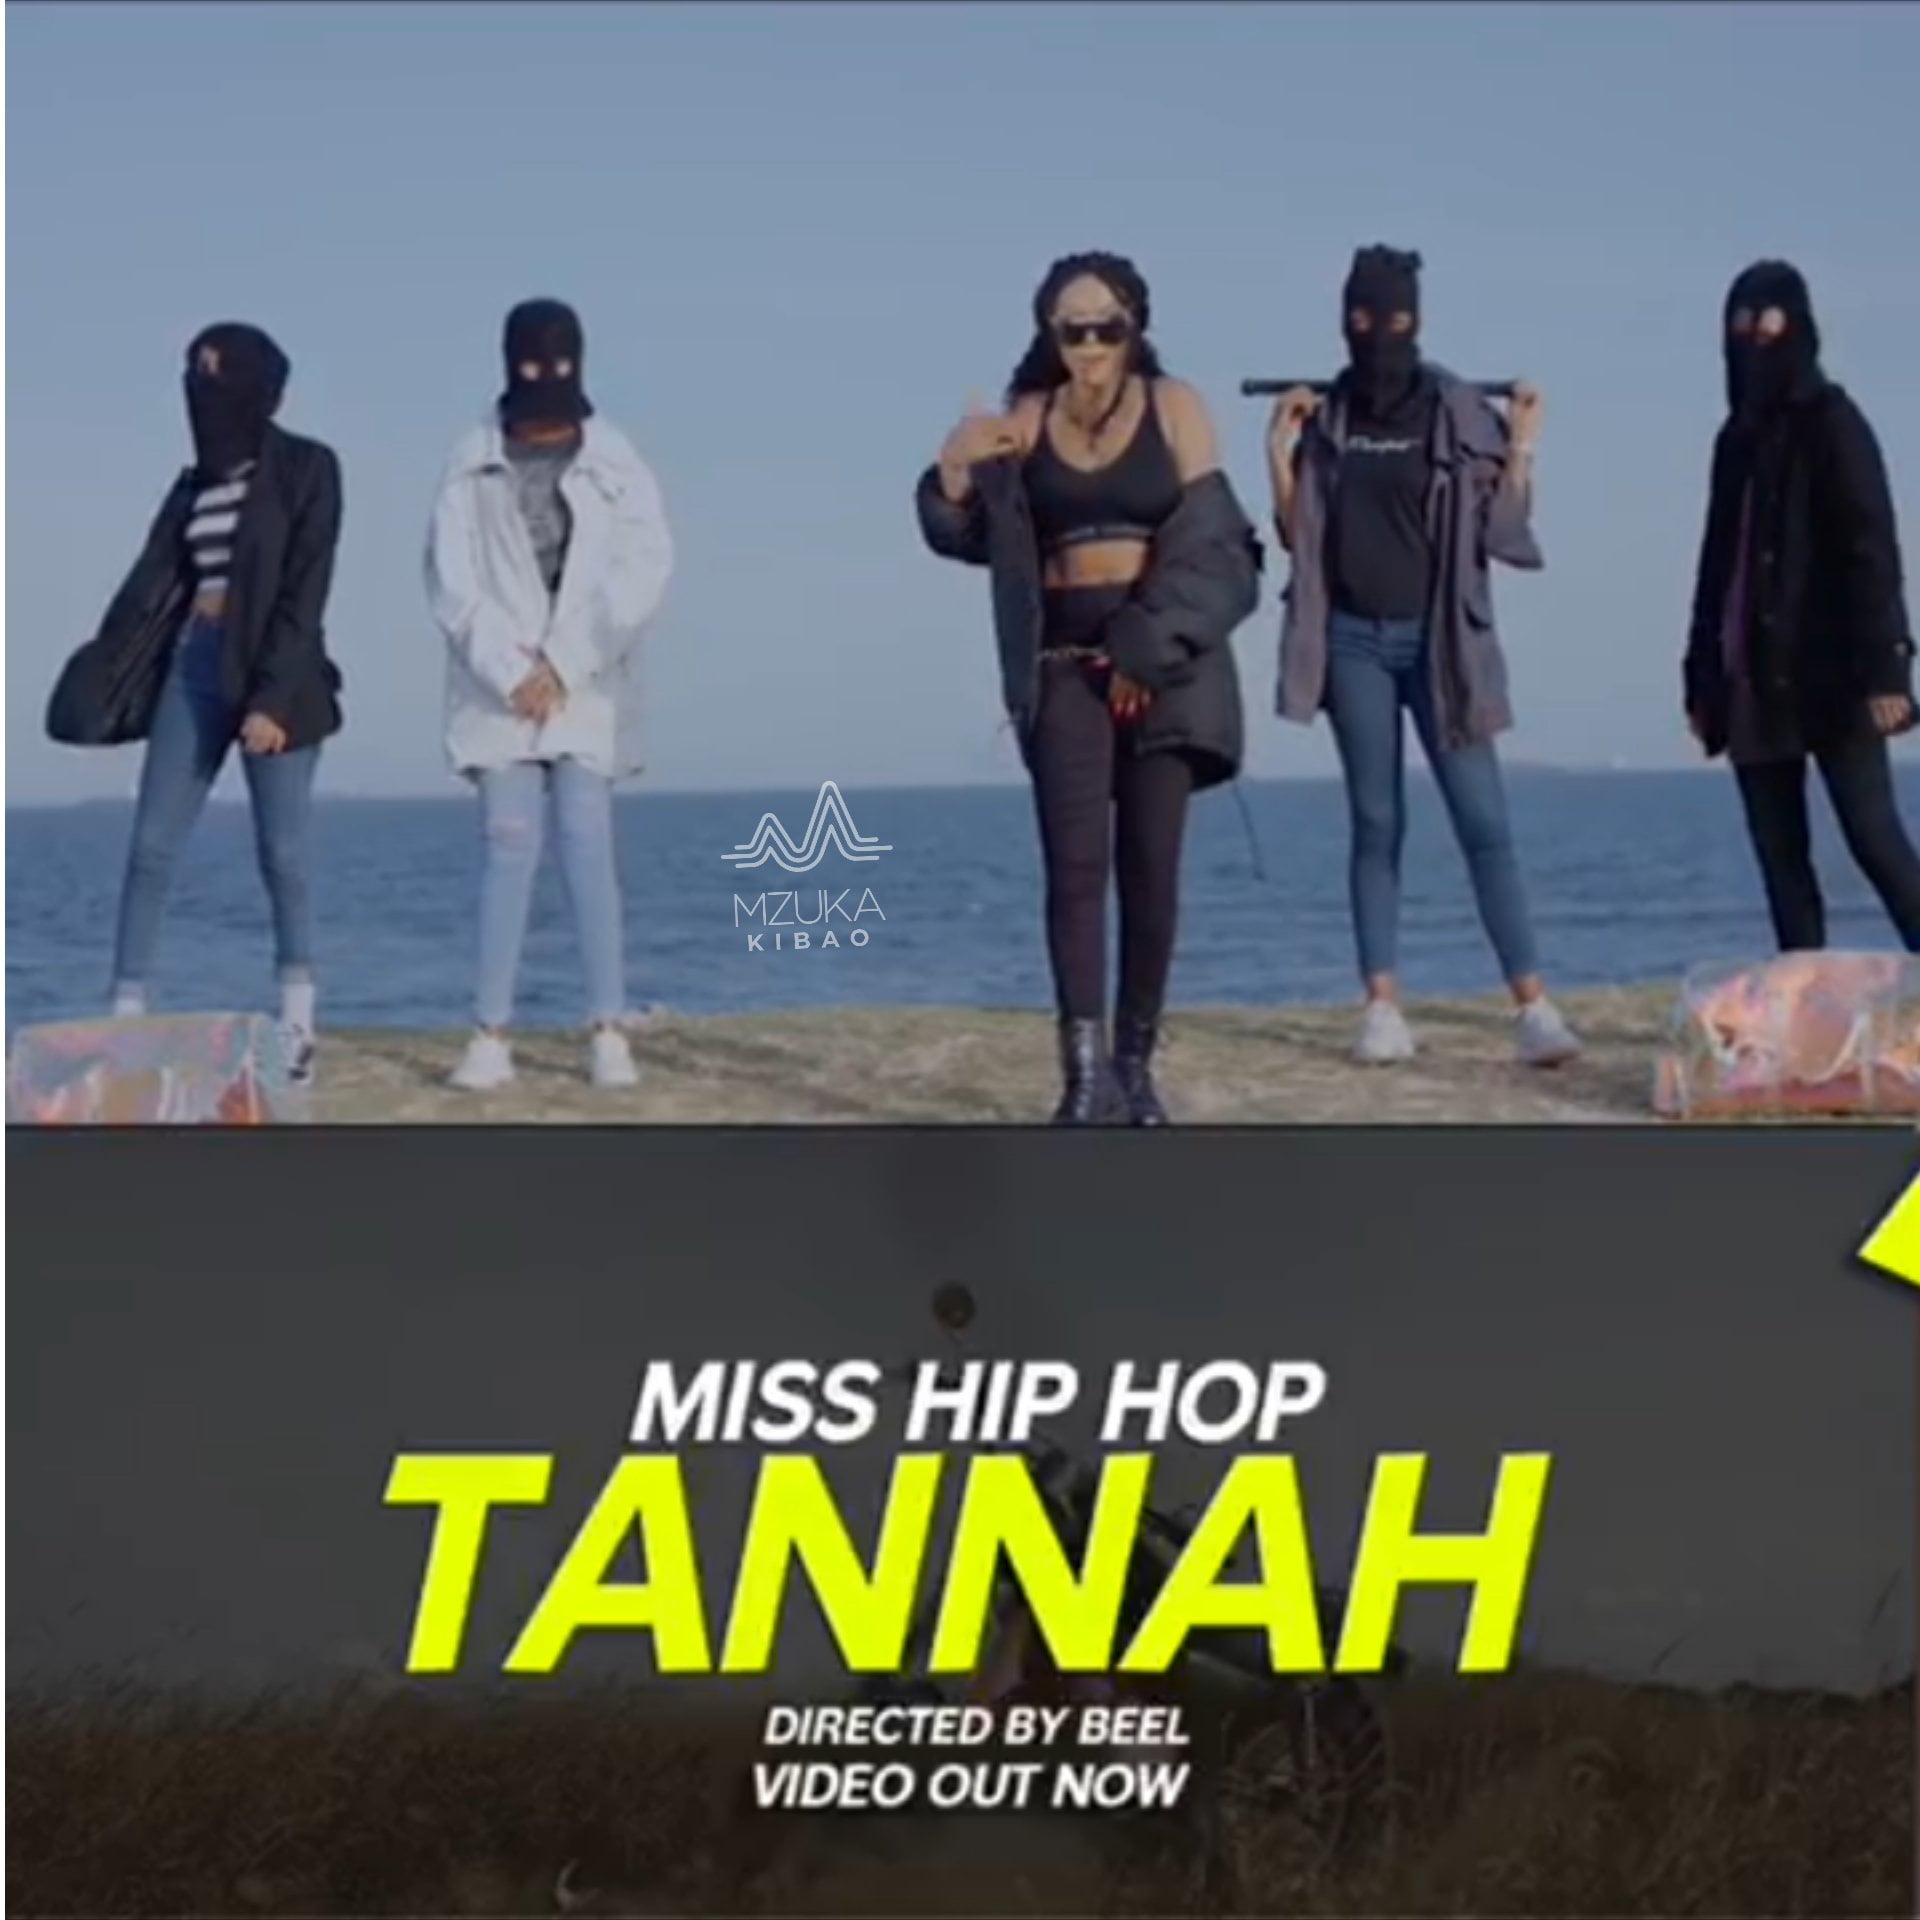 tannah miss hip hop